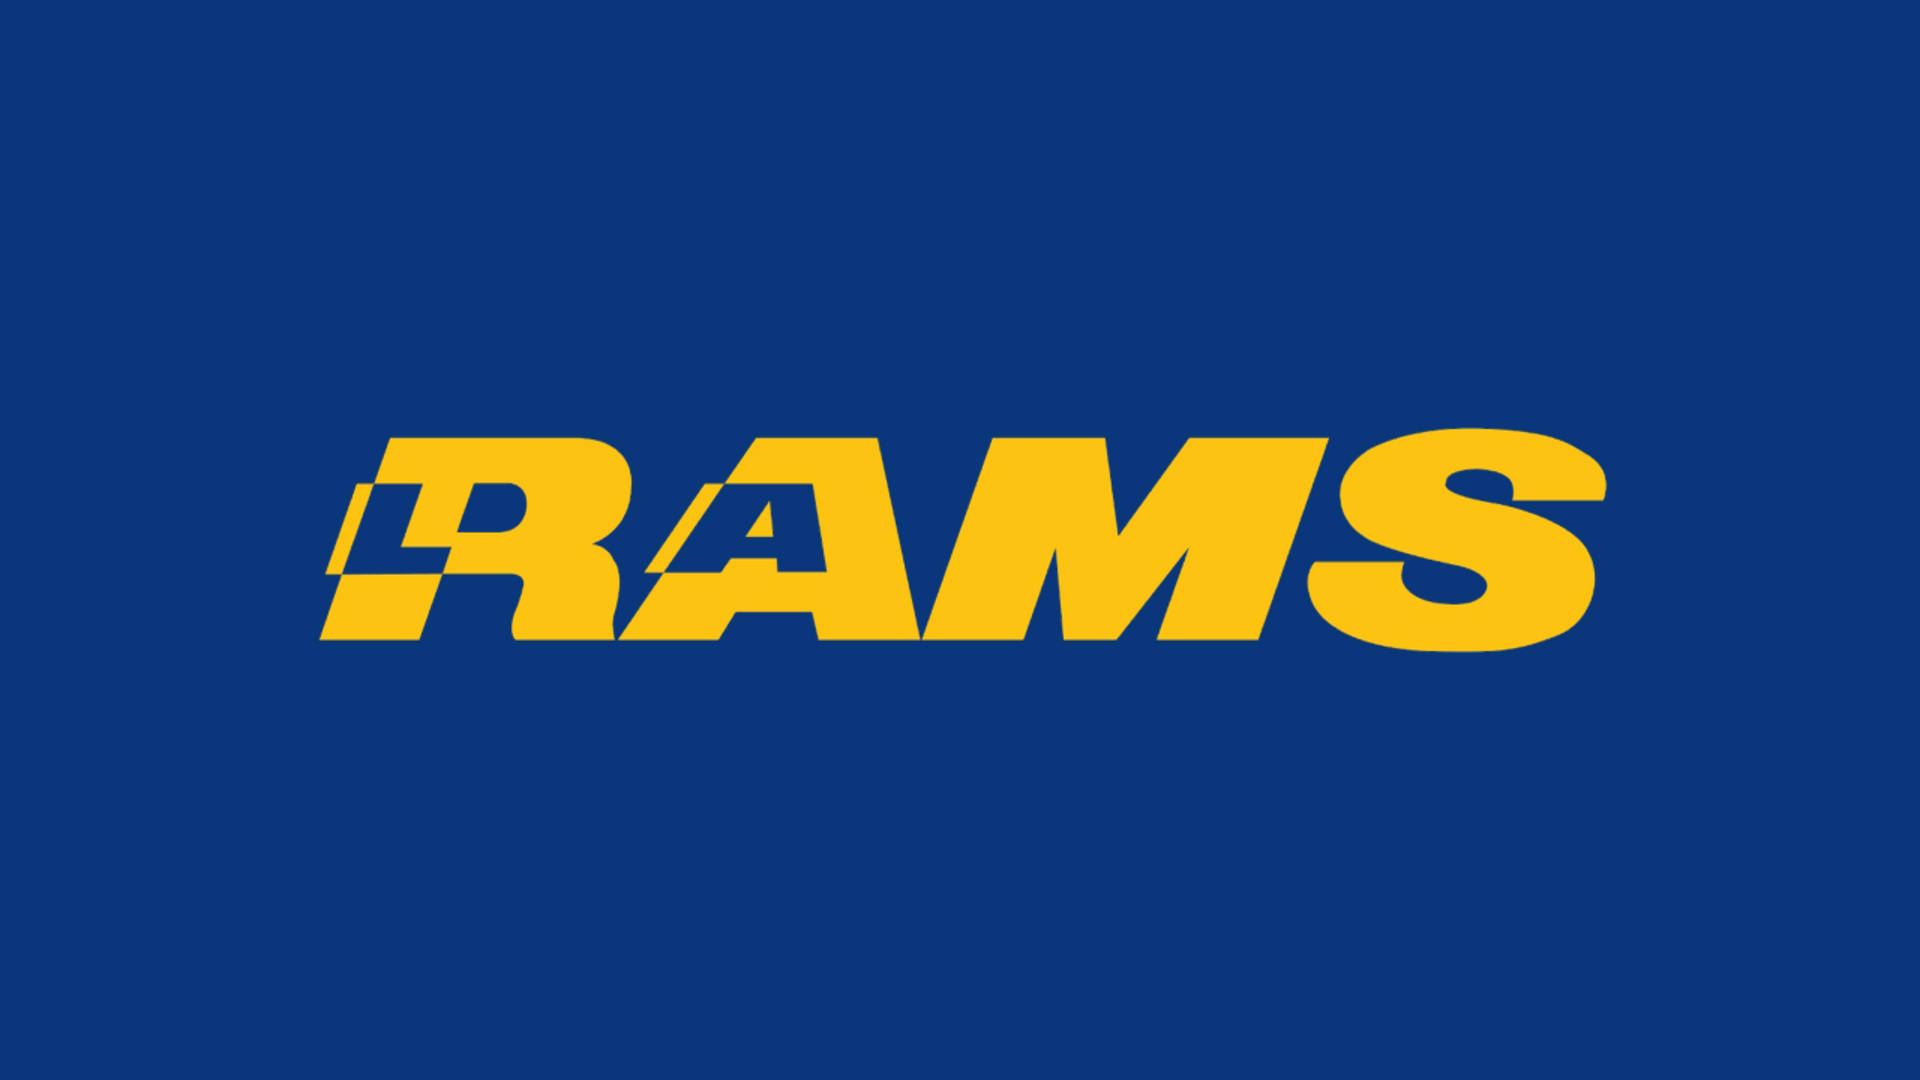 Los Angeles Rams La Team Background